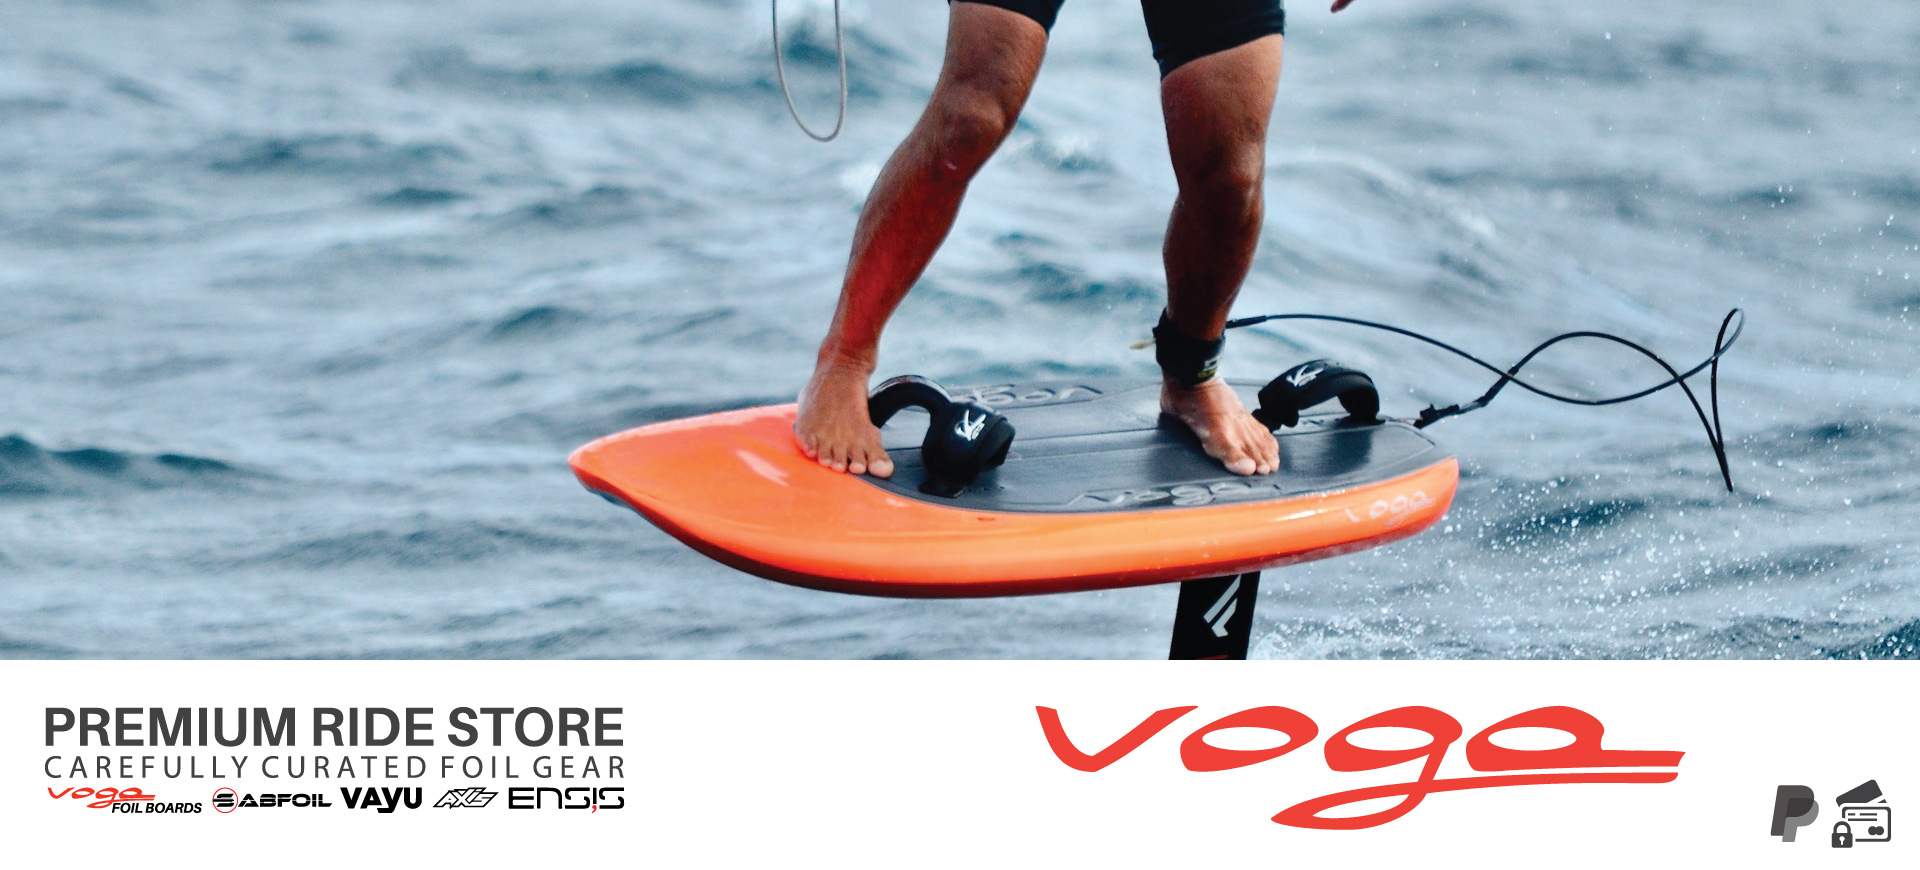 Voga Premium Ride Store freestyle wing foil boards voga marine